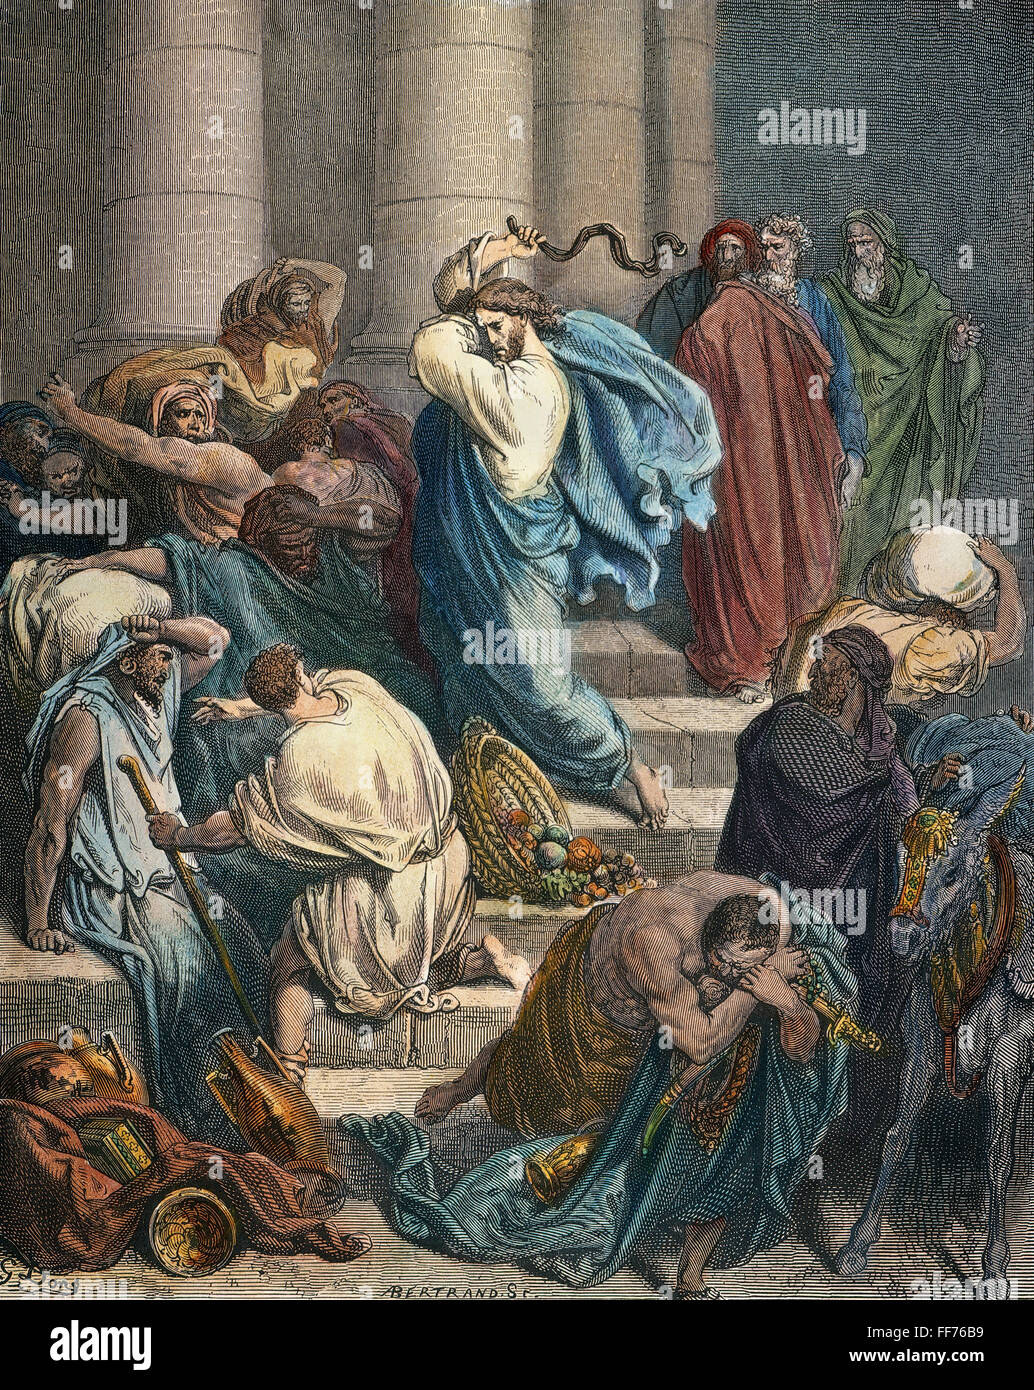 CHRISTUS IM TEMPEL. /nThe Käufer und Verkäufer aus dem Tempel vertrieben (Luke 19:46). Farbe nach Gustave DorΘ gravieren. Stockfoto